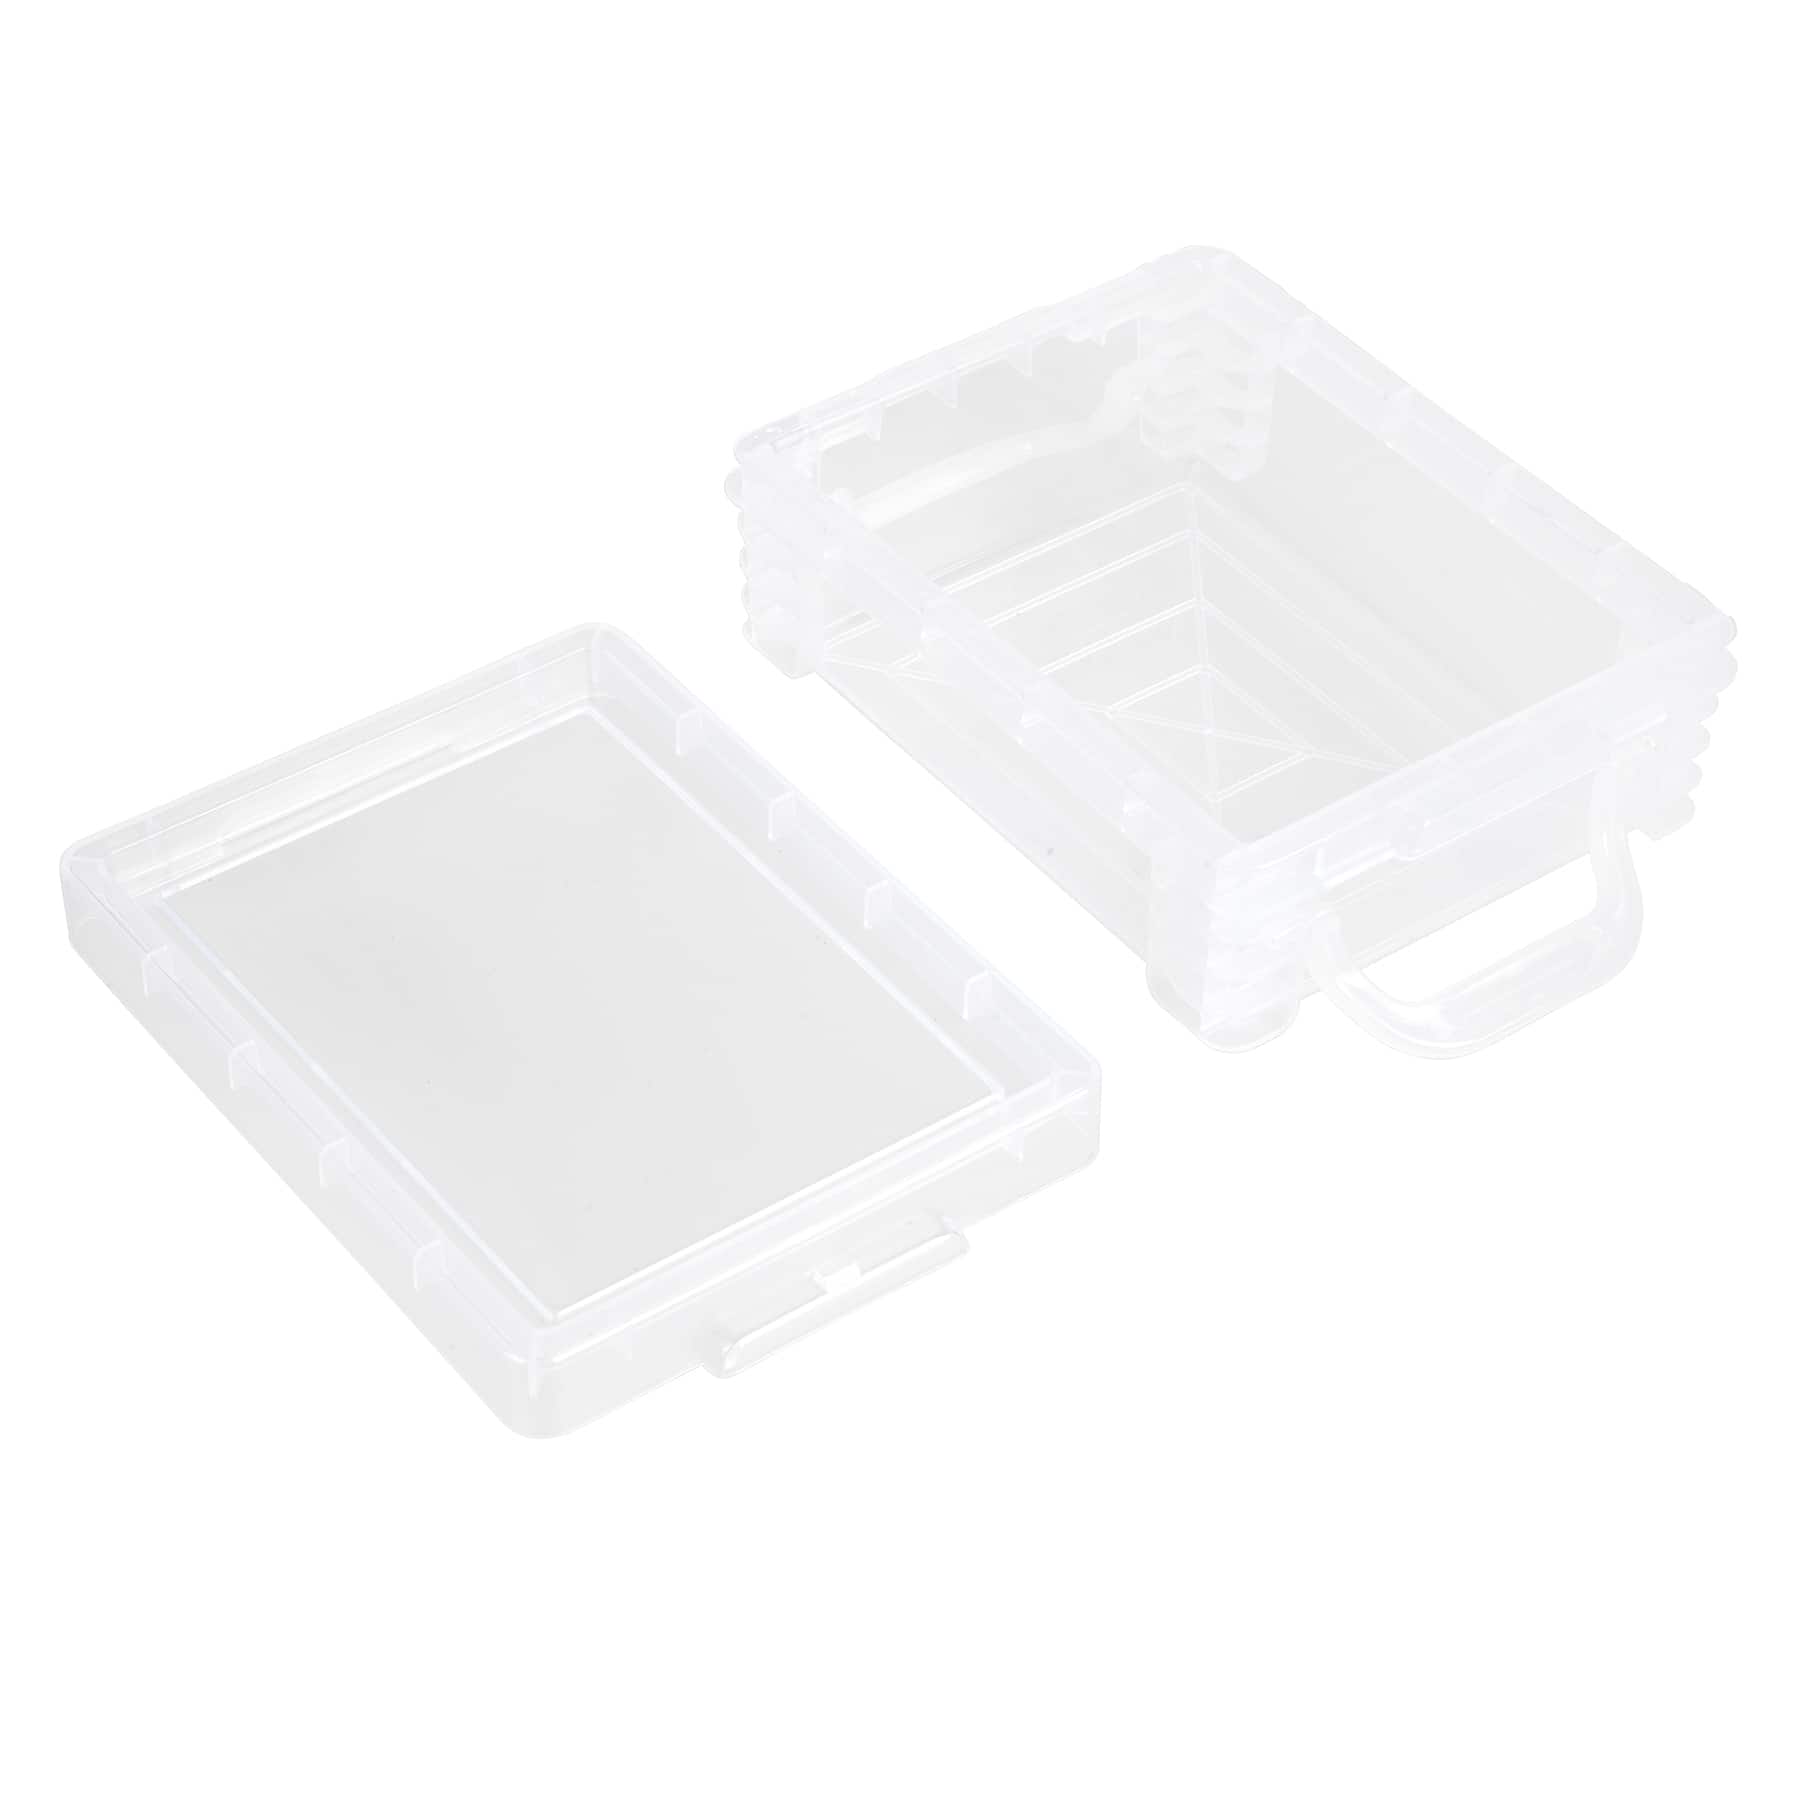 Crayon Box Storage Containers - Clear Crayon Case - Plastic Crayon